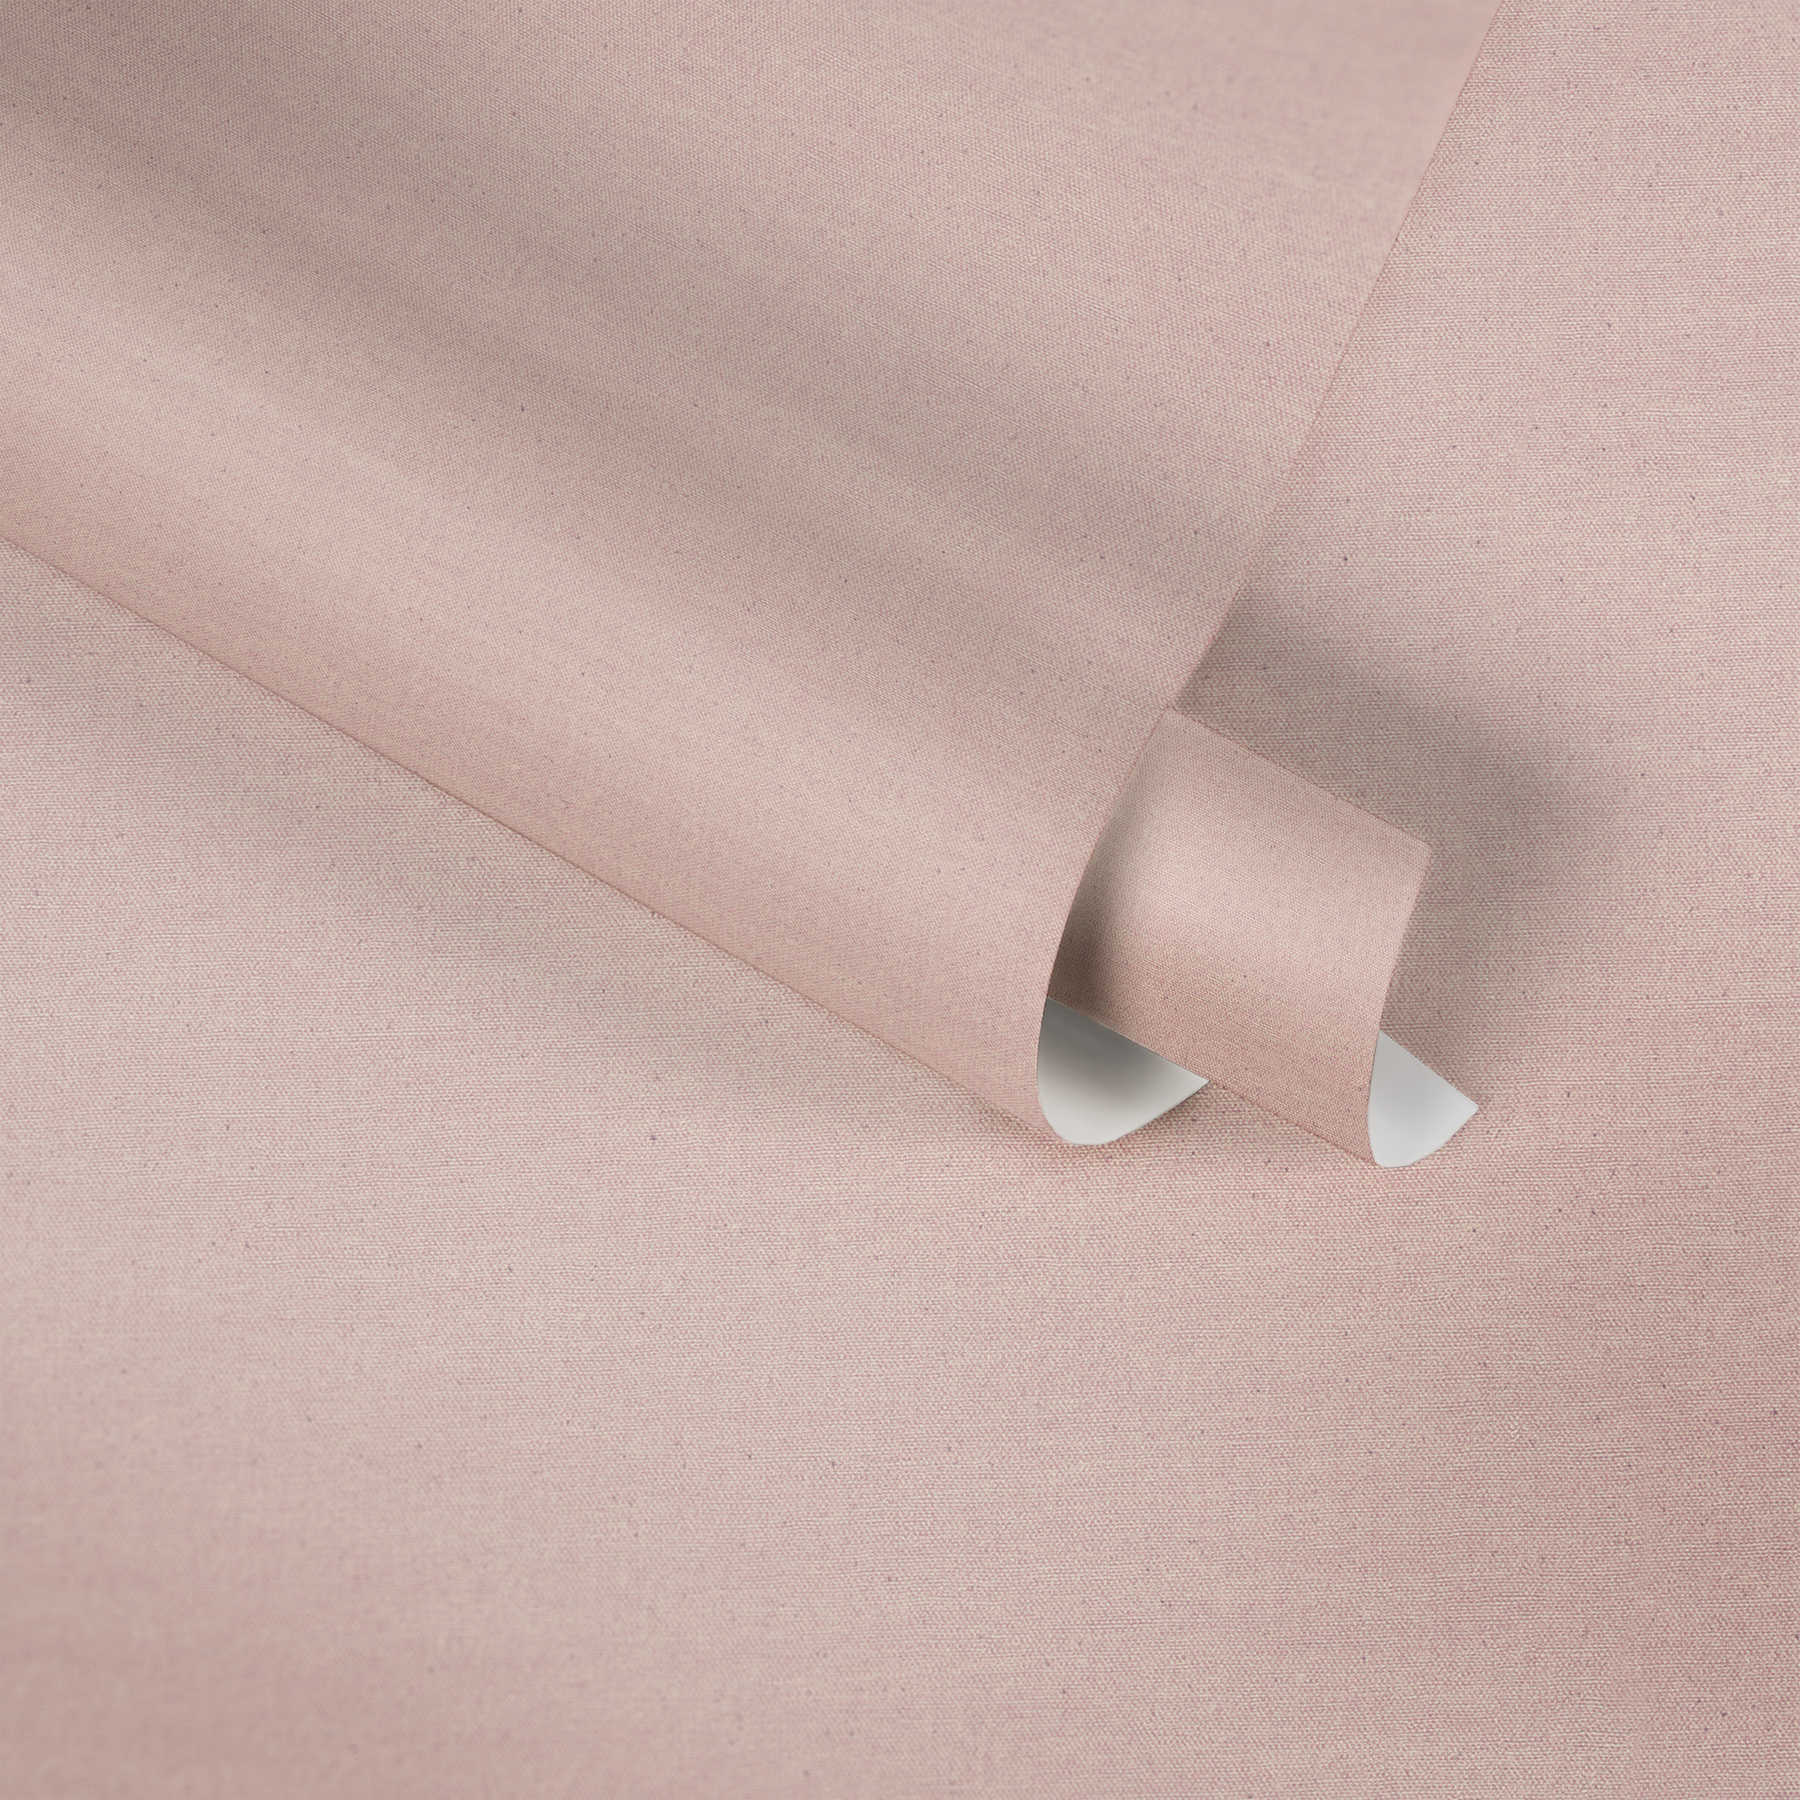             Plain Behang Roze Textiel Ontwerp met Grijze Stippen
        